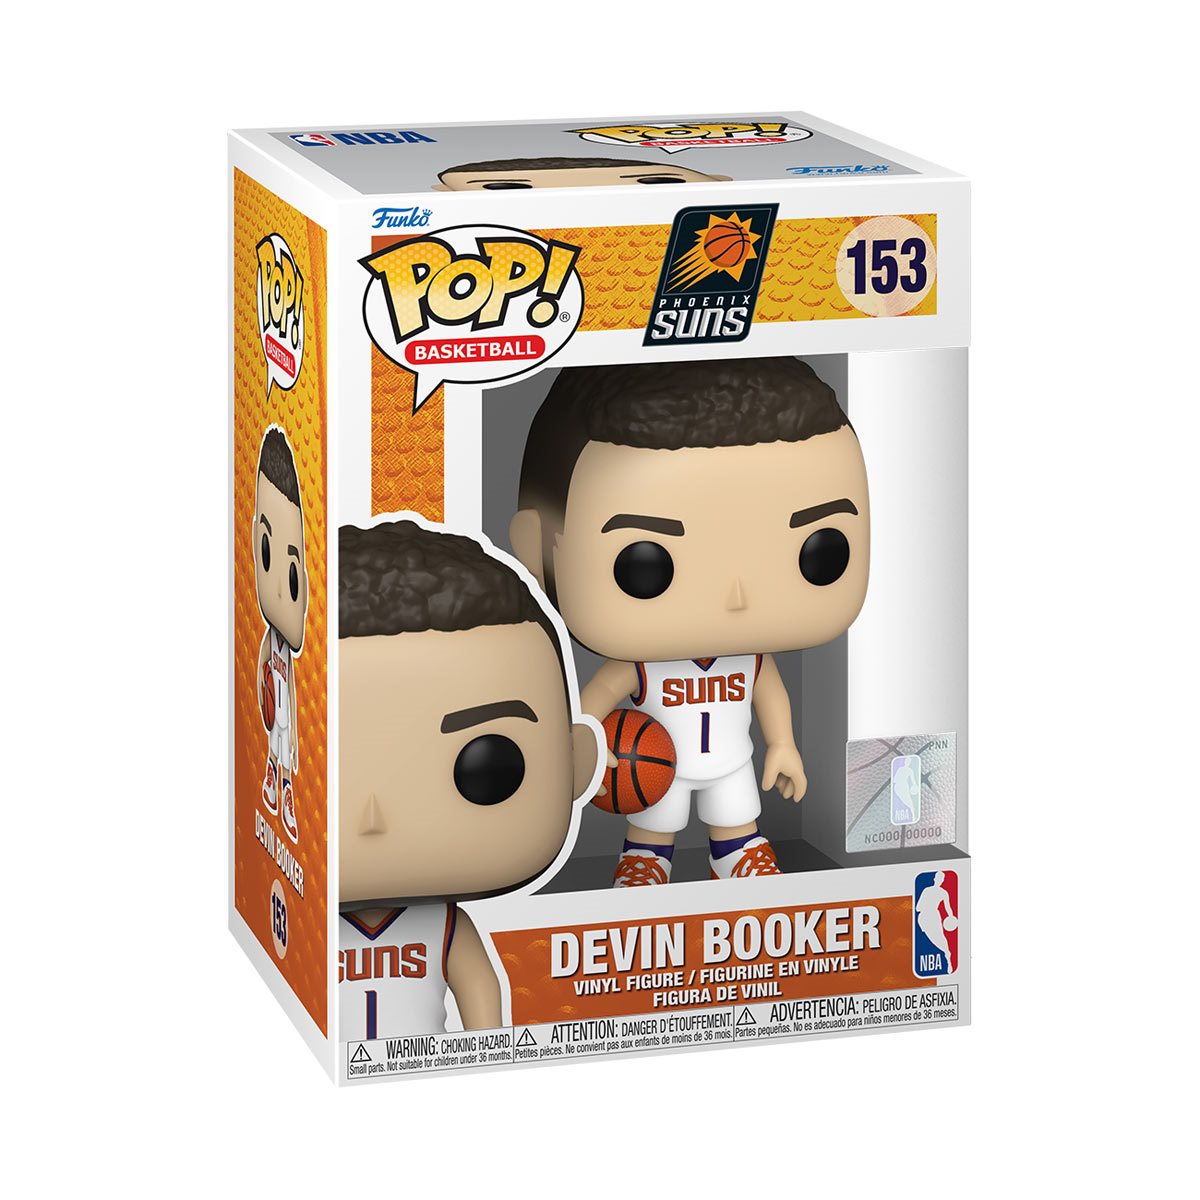 Devin Booker NBA Suns Pop! Vinyl Figure